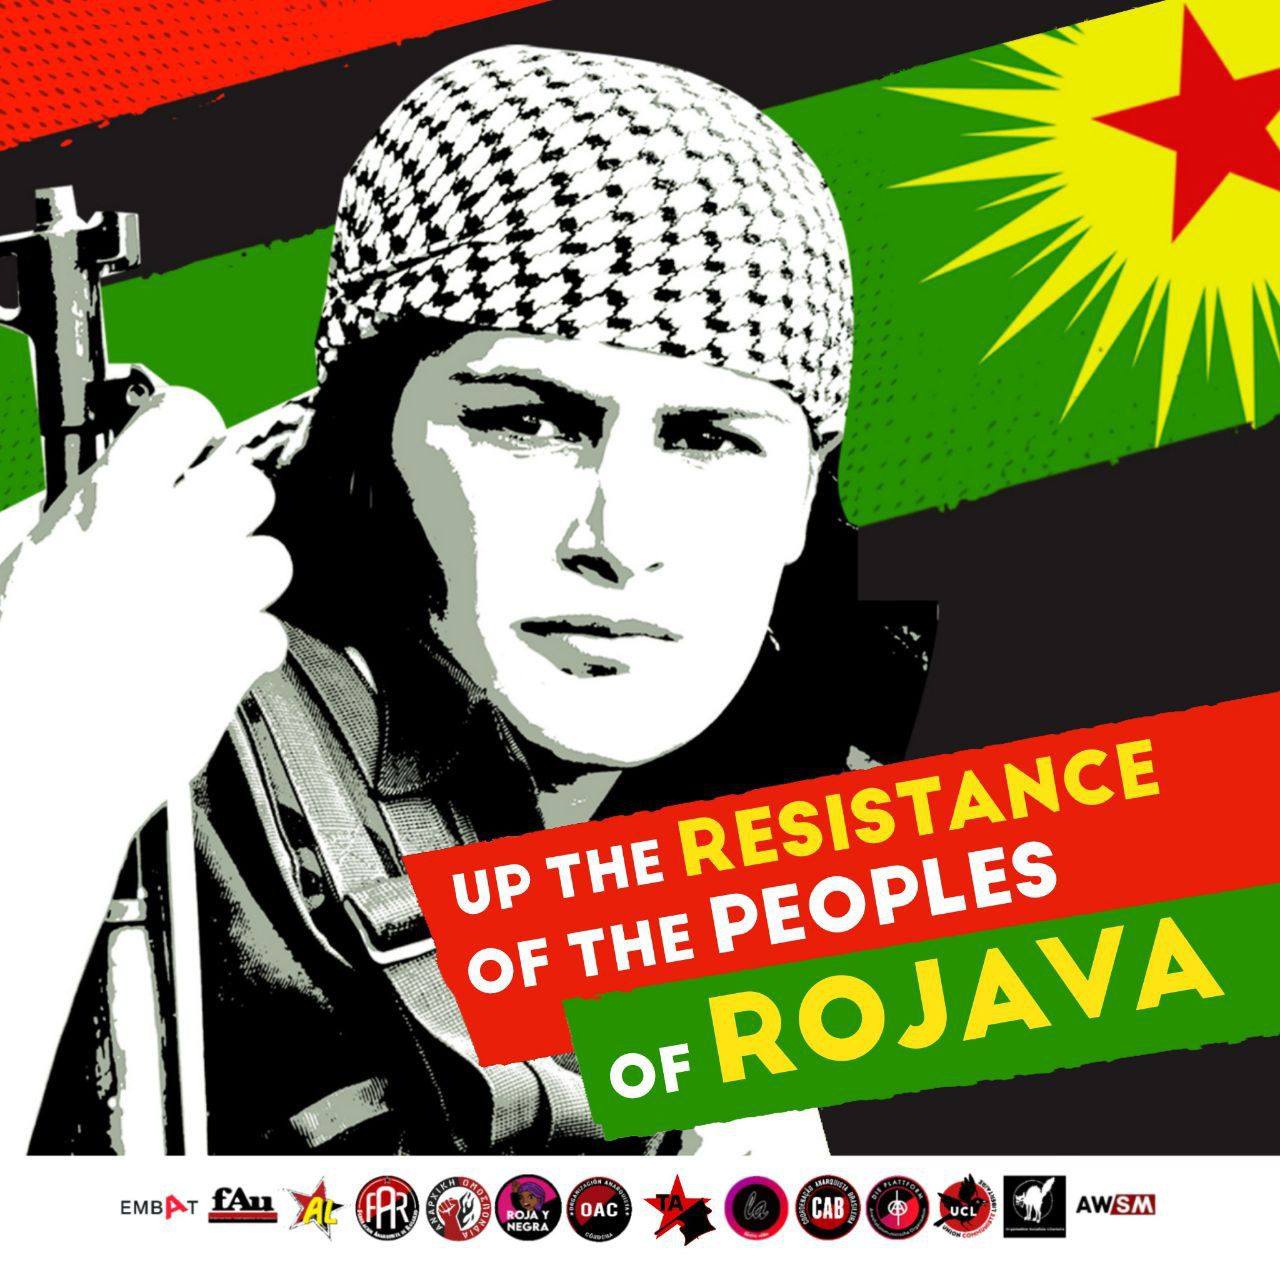 Η επανάσταση της Ροζάβα υπερασπίστηκε τον κόσμο, τώρα ο κόσμος θα υπερασπιστεί την επανάσταση της Ροζάβα!